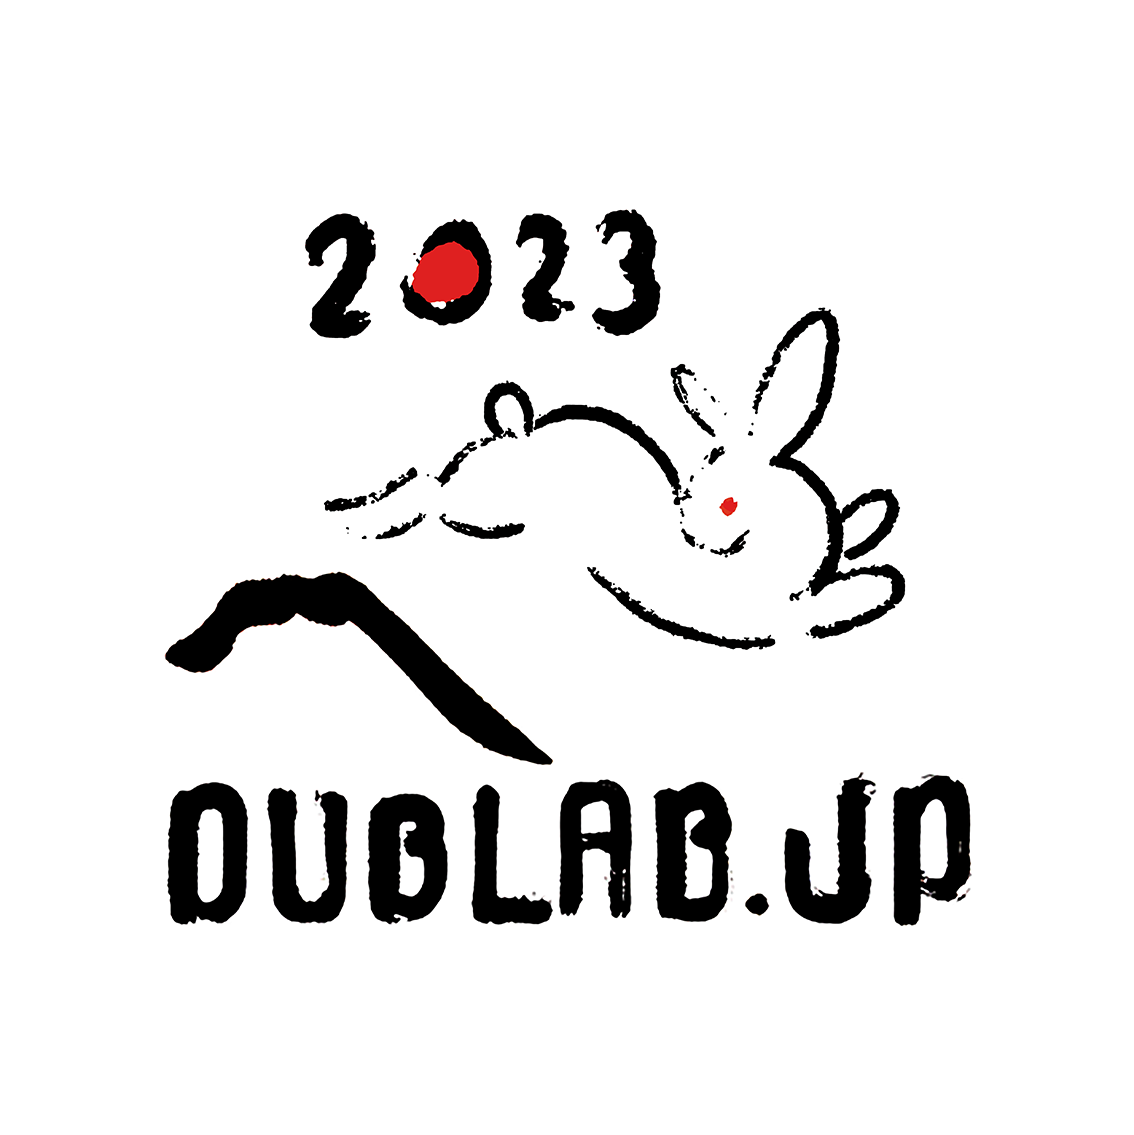 2023 dublab.jp